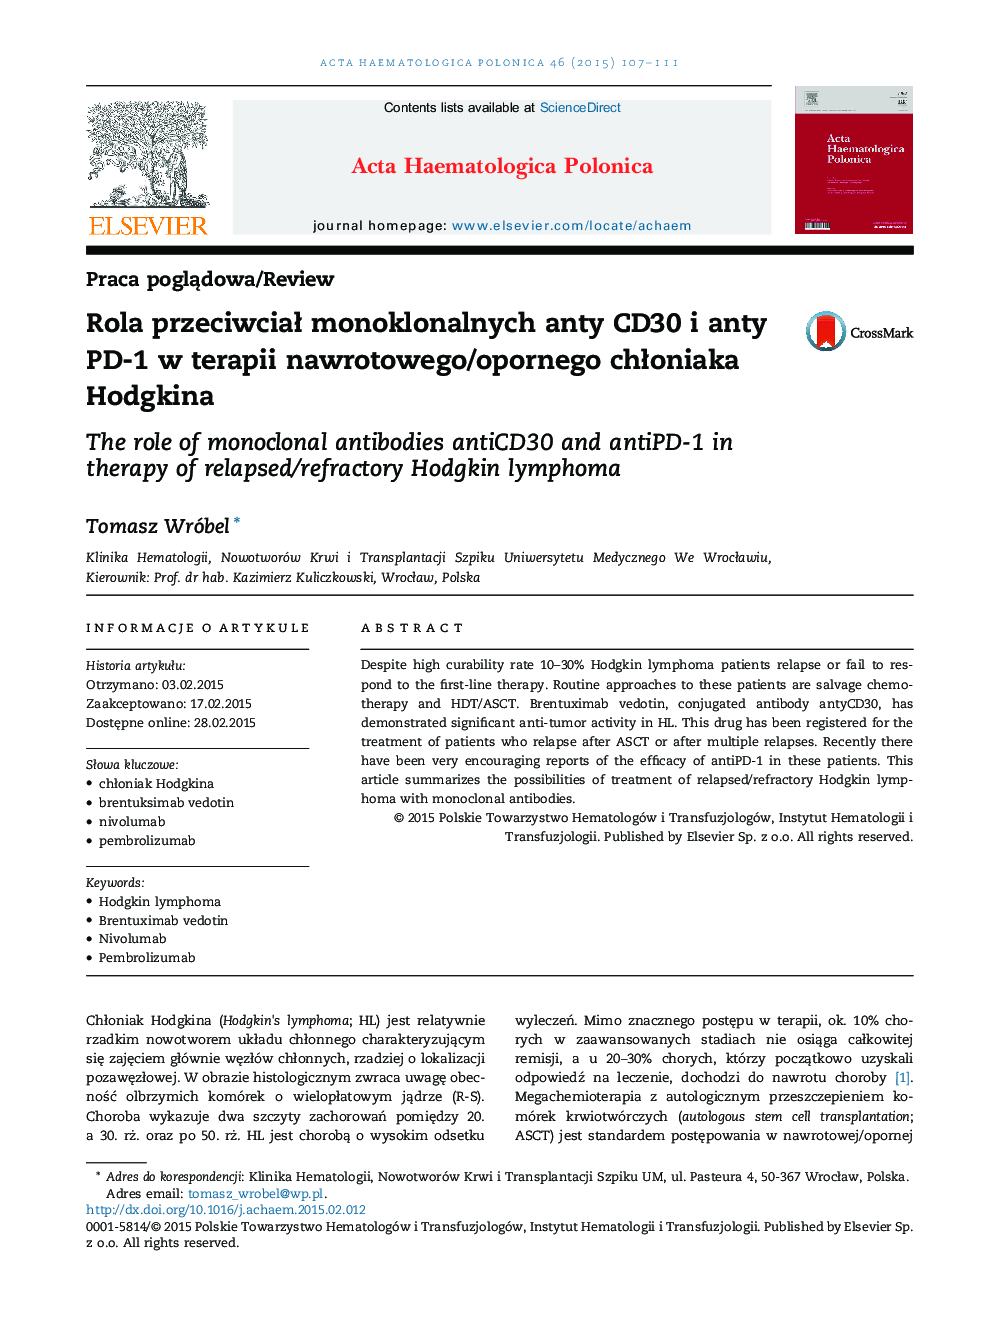 Rola przeciwciał monoklonalnych anty CD30 i anty PD-1 w terapii nawrotowego/opornego chłoniaka Hodgkina